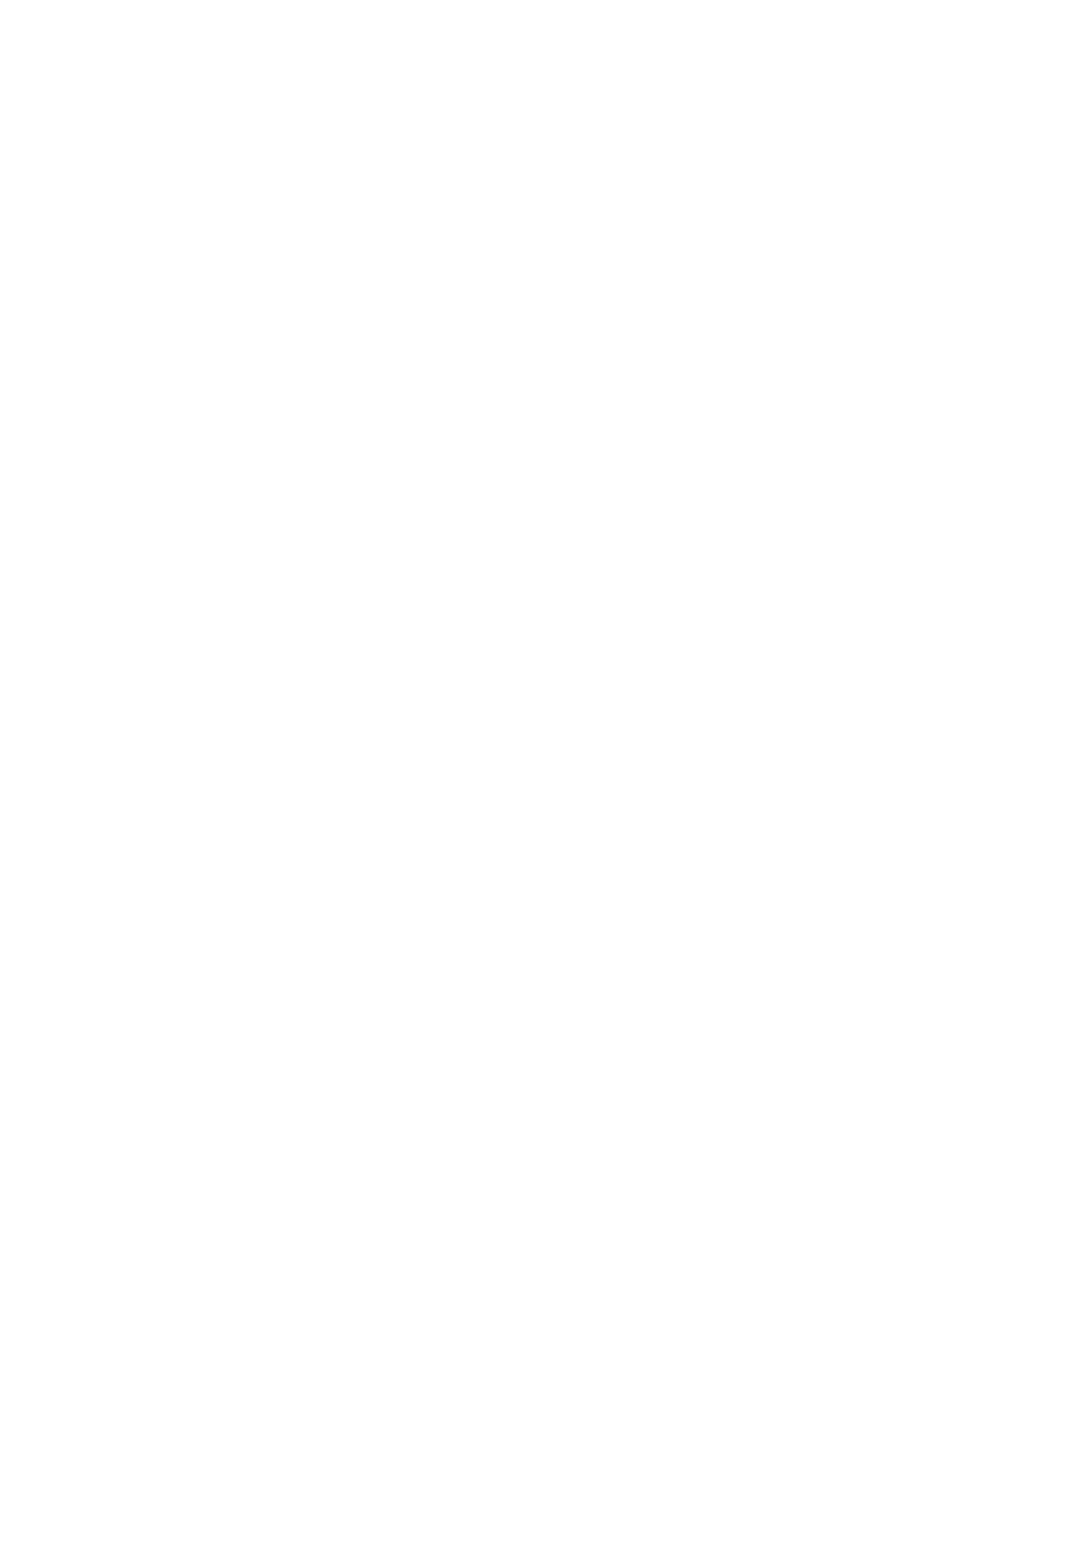 Figma logo pour fonds sombres (PNG transparent)